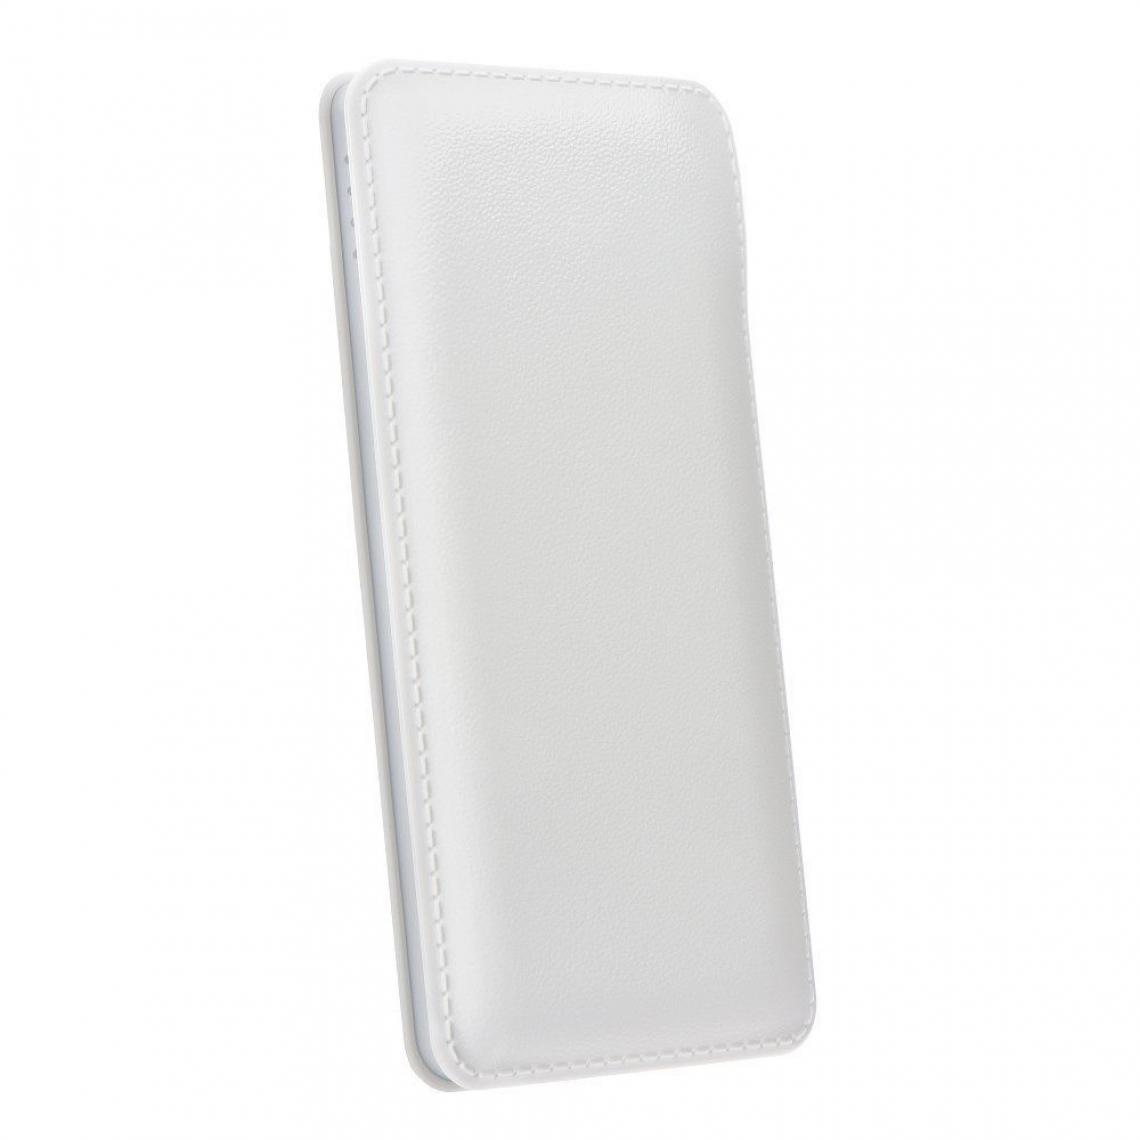 Ozzzo - Chargeur batterie externe 30000 mAh powerbank ozzzo blanc pour Huawei MediaPad M6 10.8 - Autres accessoires smartphone